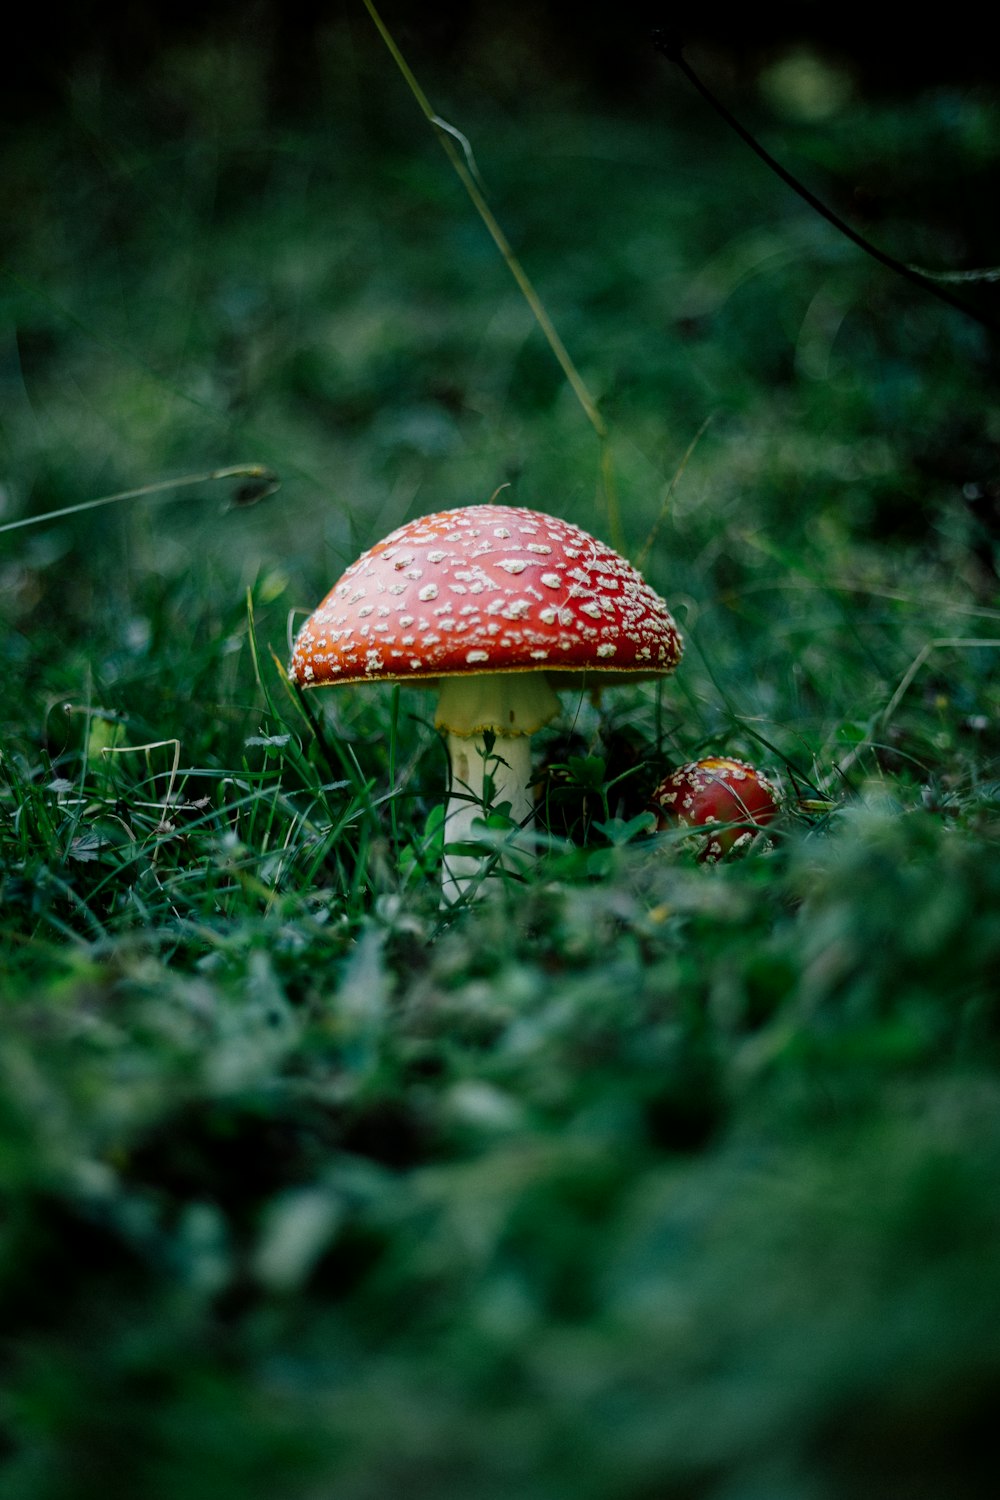 red mushroom on green grass